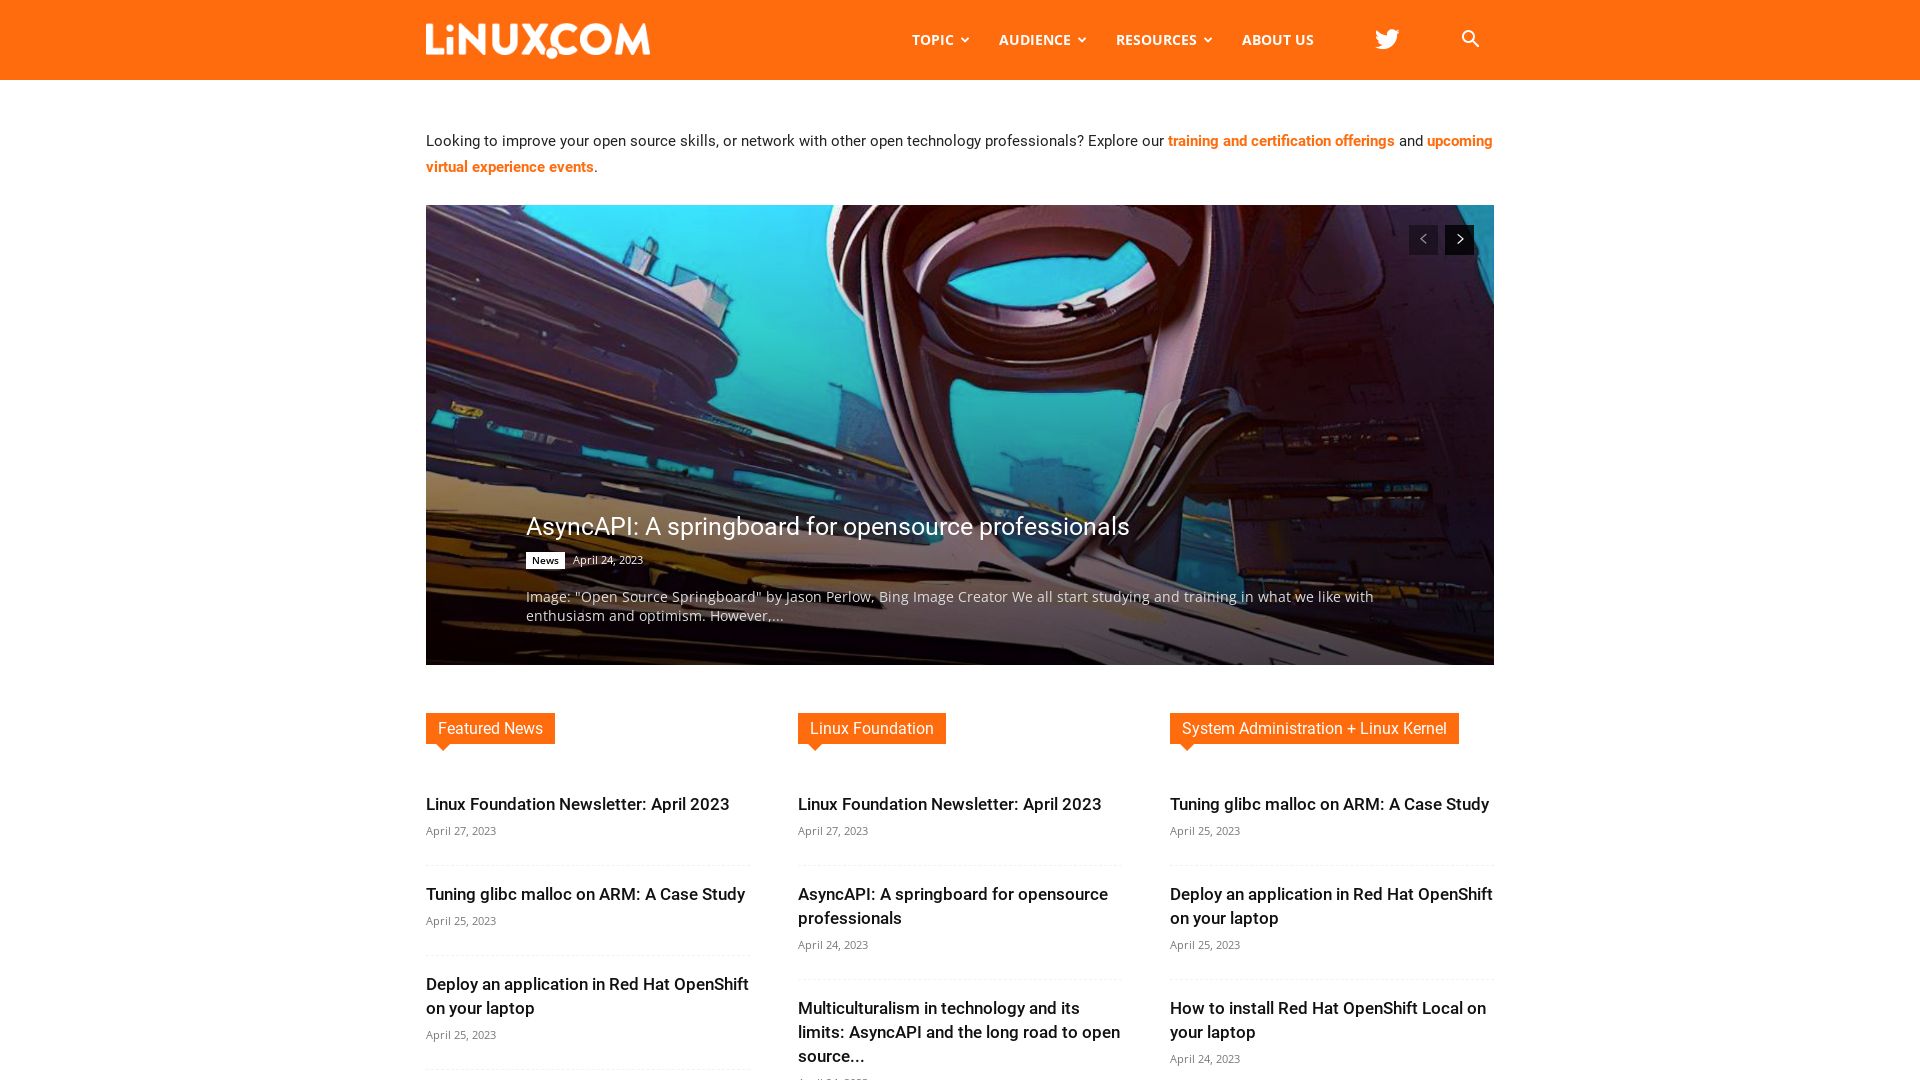 网站状态 linux.com 是  在线的